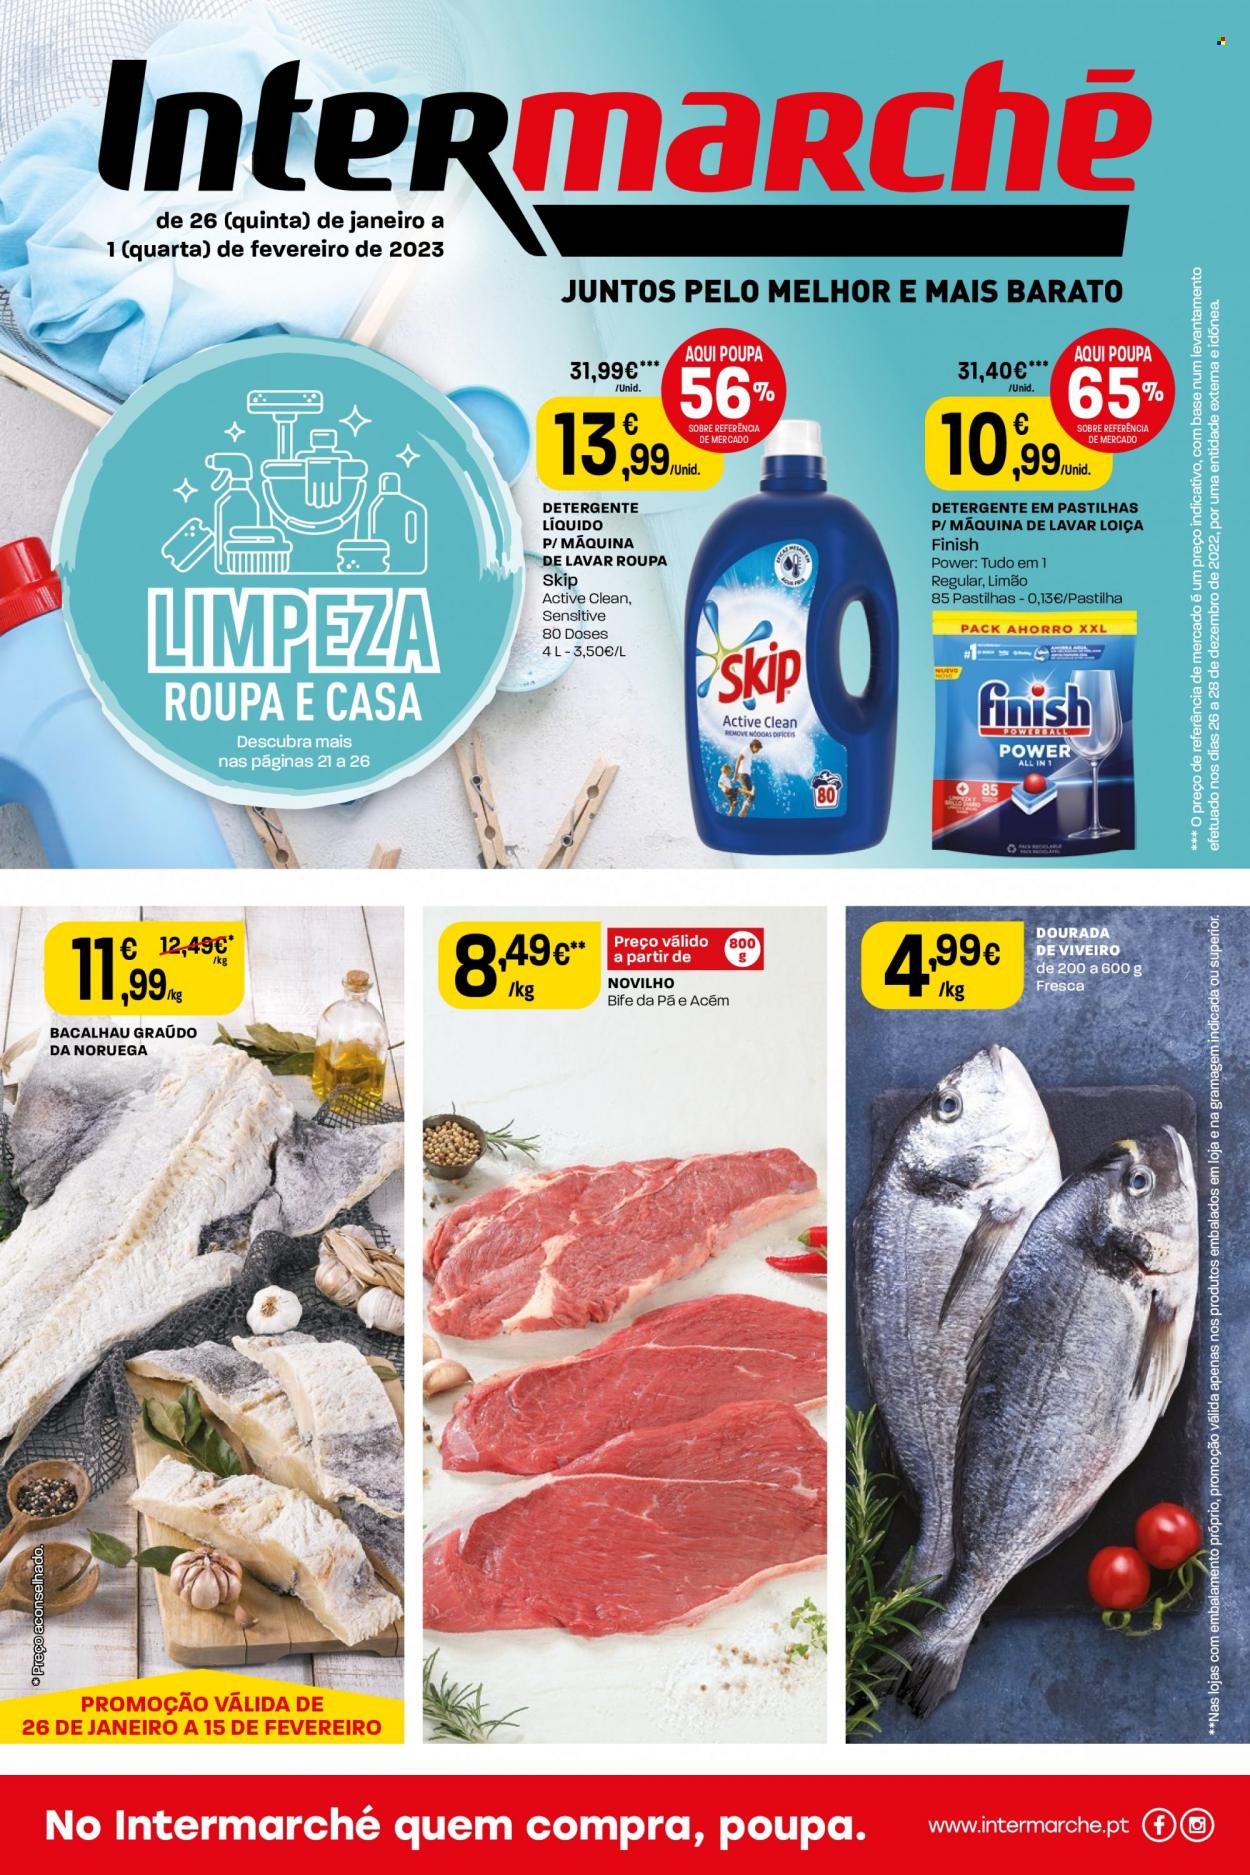 thumbnail - Folheto Intermarché - 26.1.2023 - 1.2.2023 - Produtos em promoção - bife, carne de novilho, detergente, detergente líquido, Skip, Finish, bacalhau. Página 1.